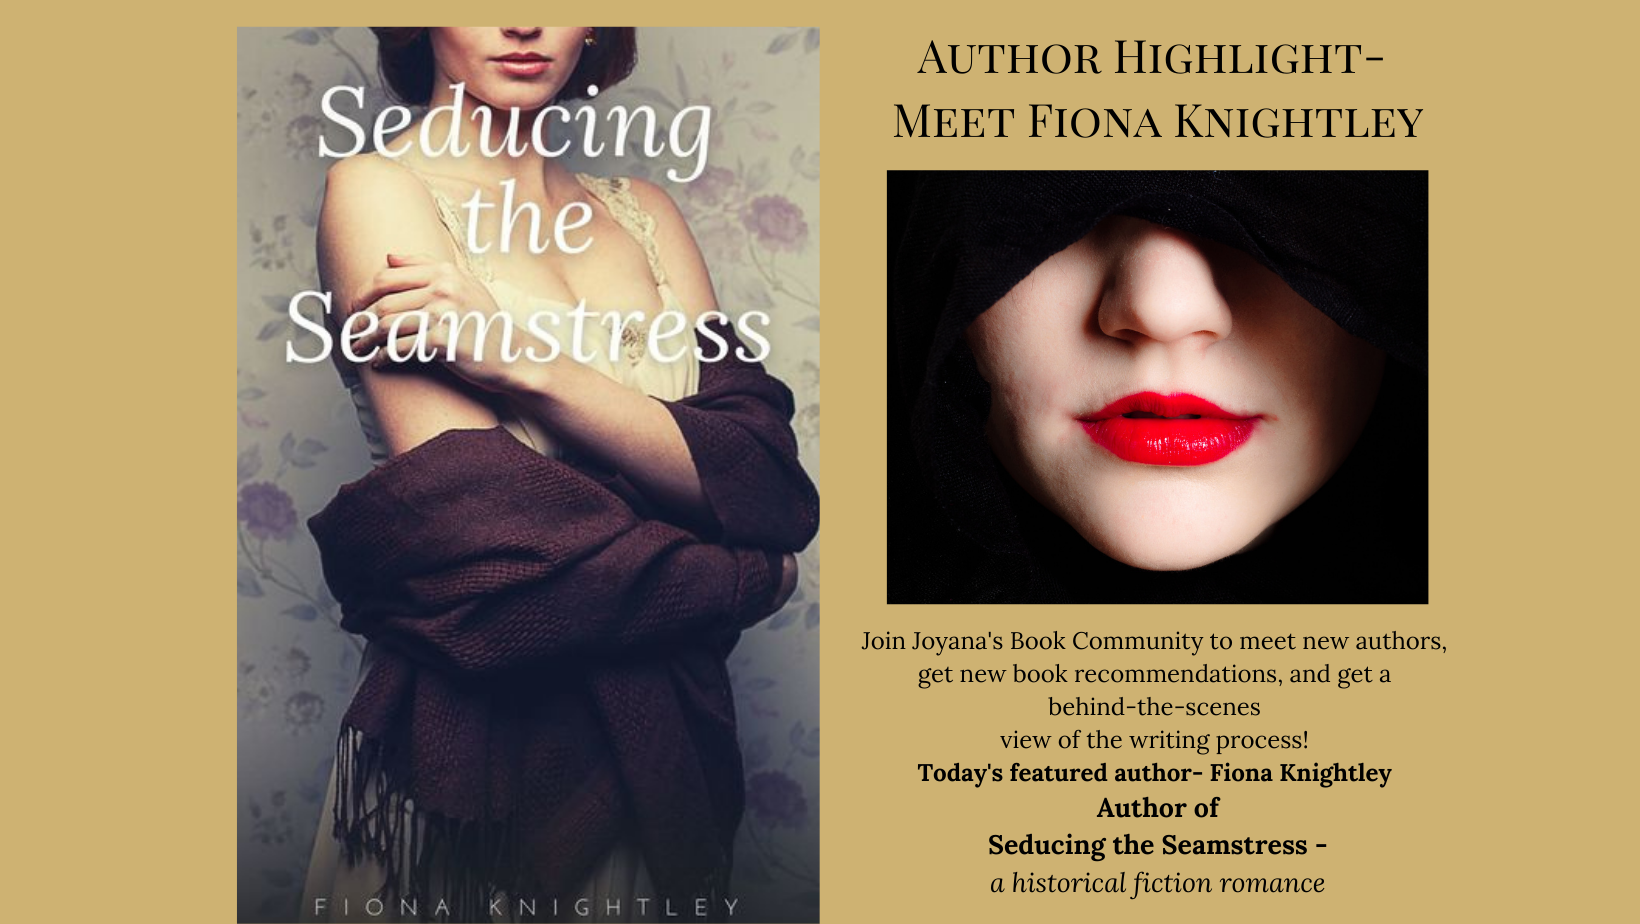 Author Highlight- Meet Fiona Knightley